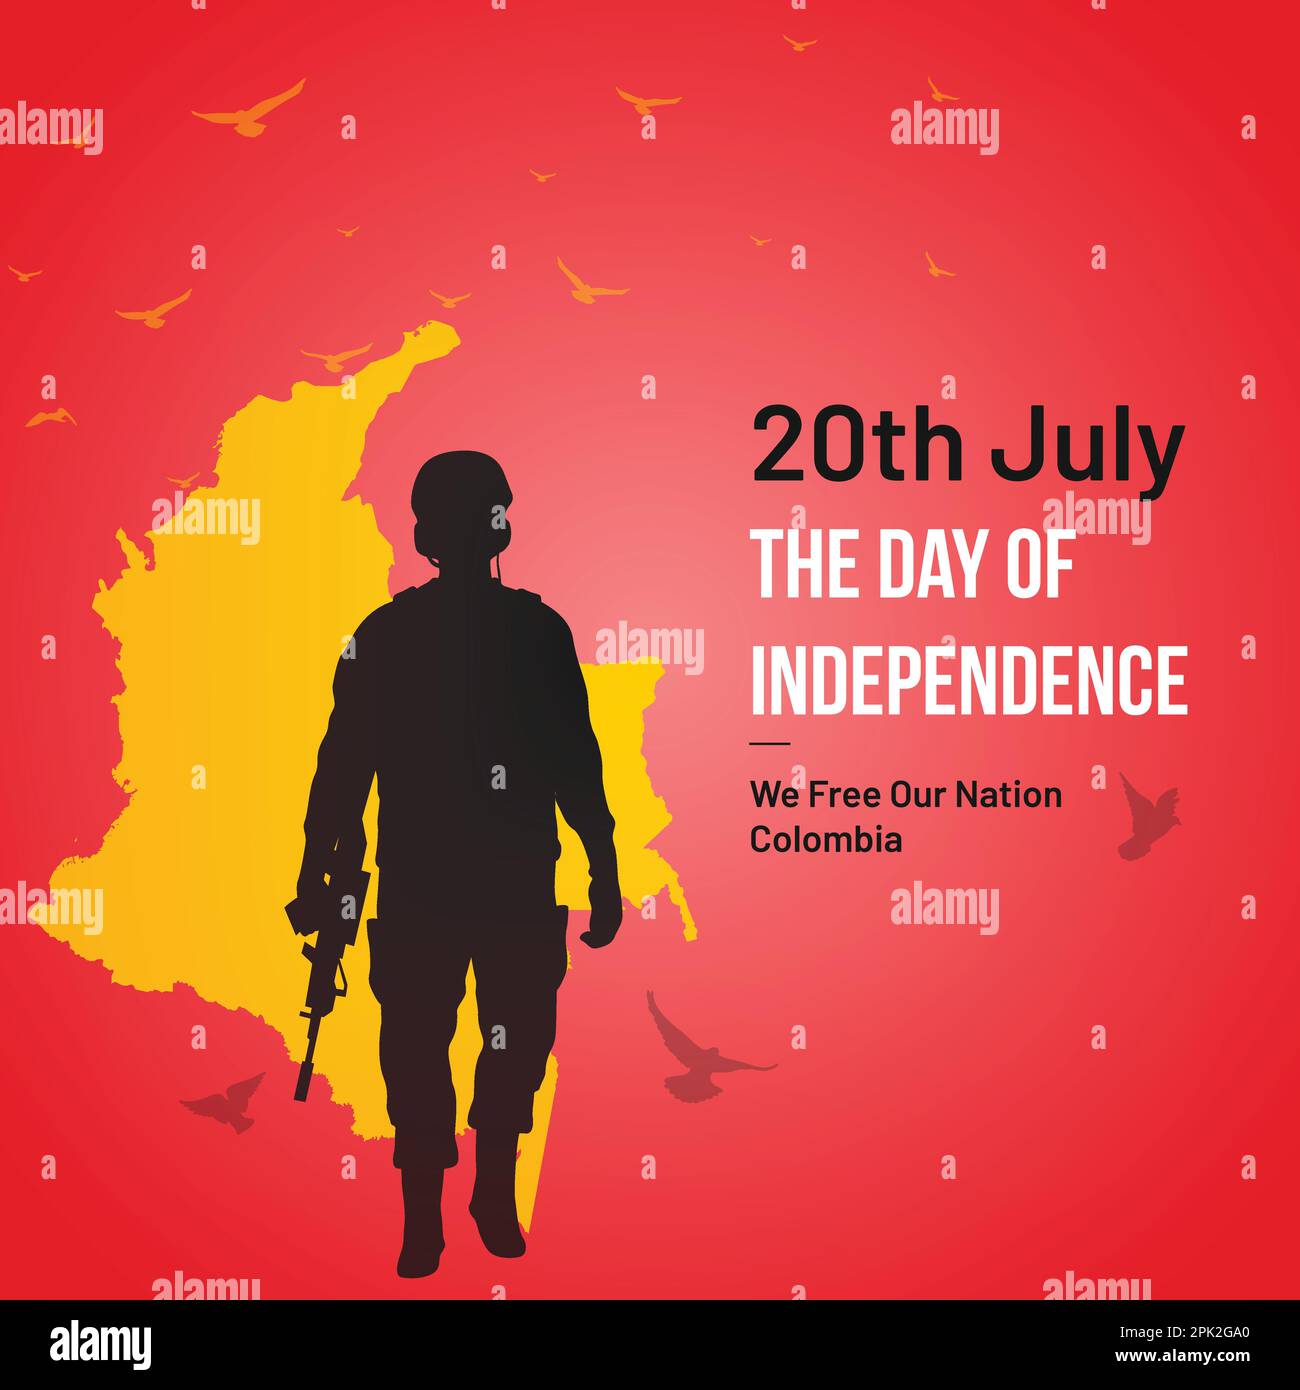 Post sui social media del giorno dell'indipendenza della Colombia, biglietto d'auguri, illustrazione vettoriale. 20 luglio festa nazionale colombiana. Illustrazione Vettoriale